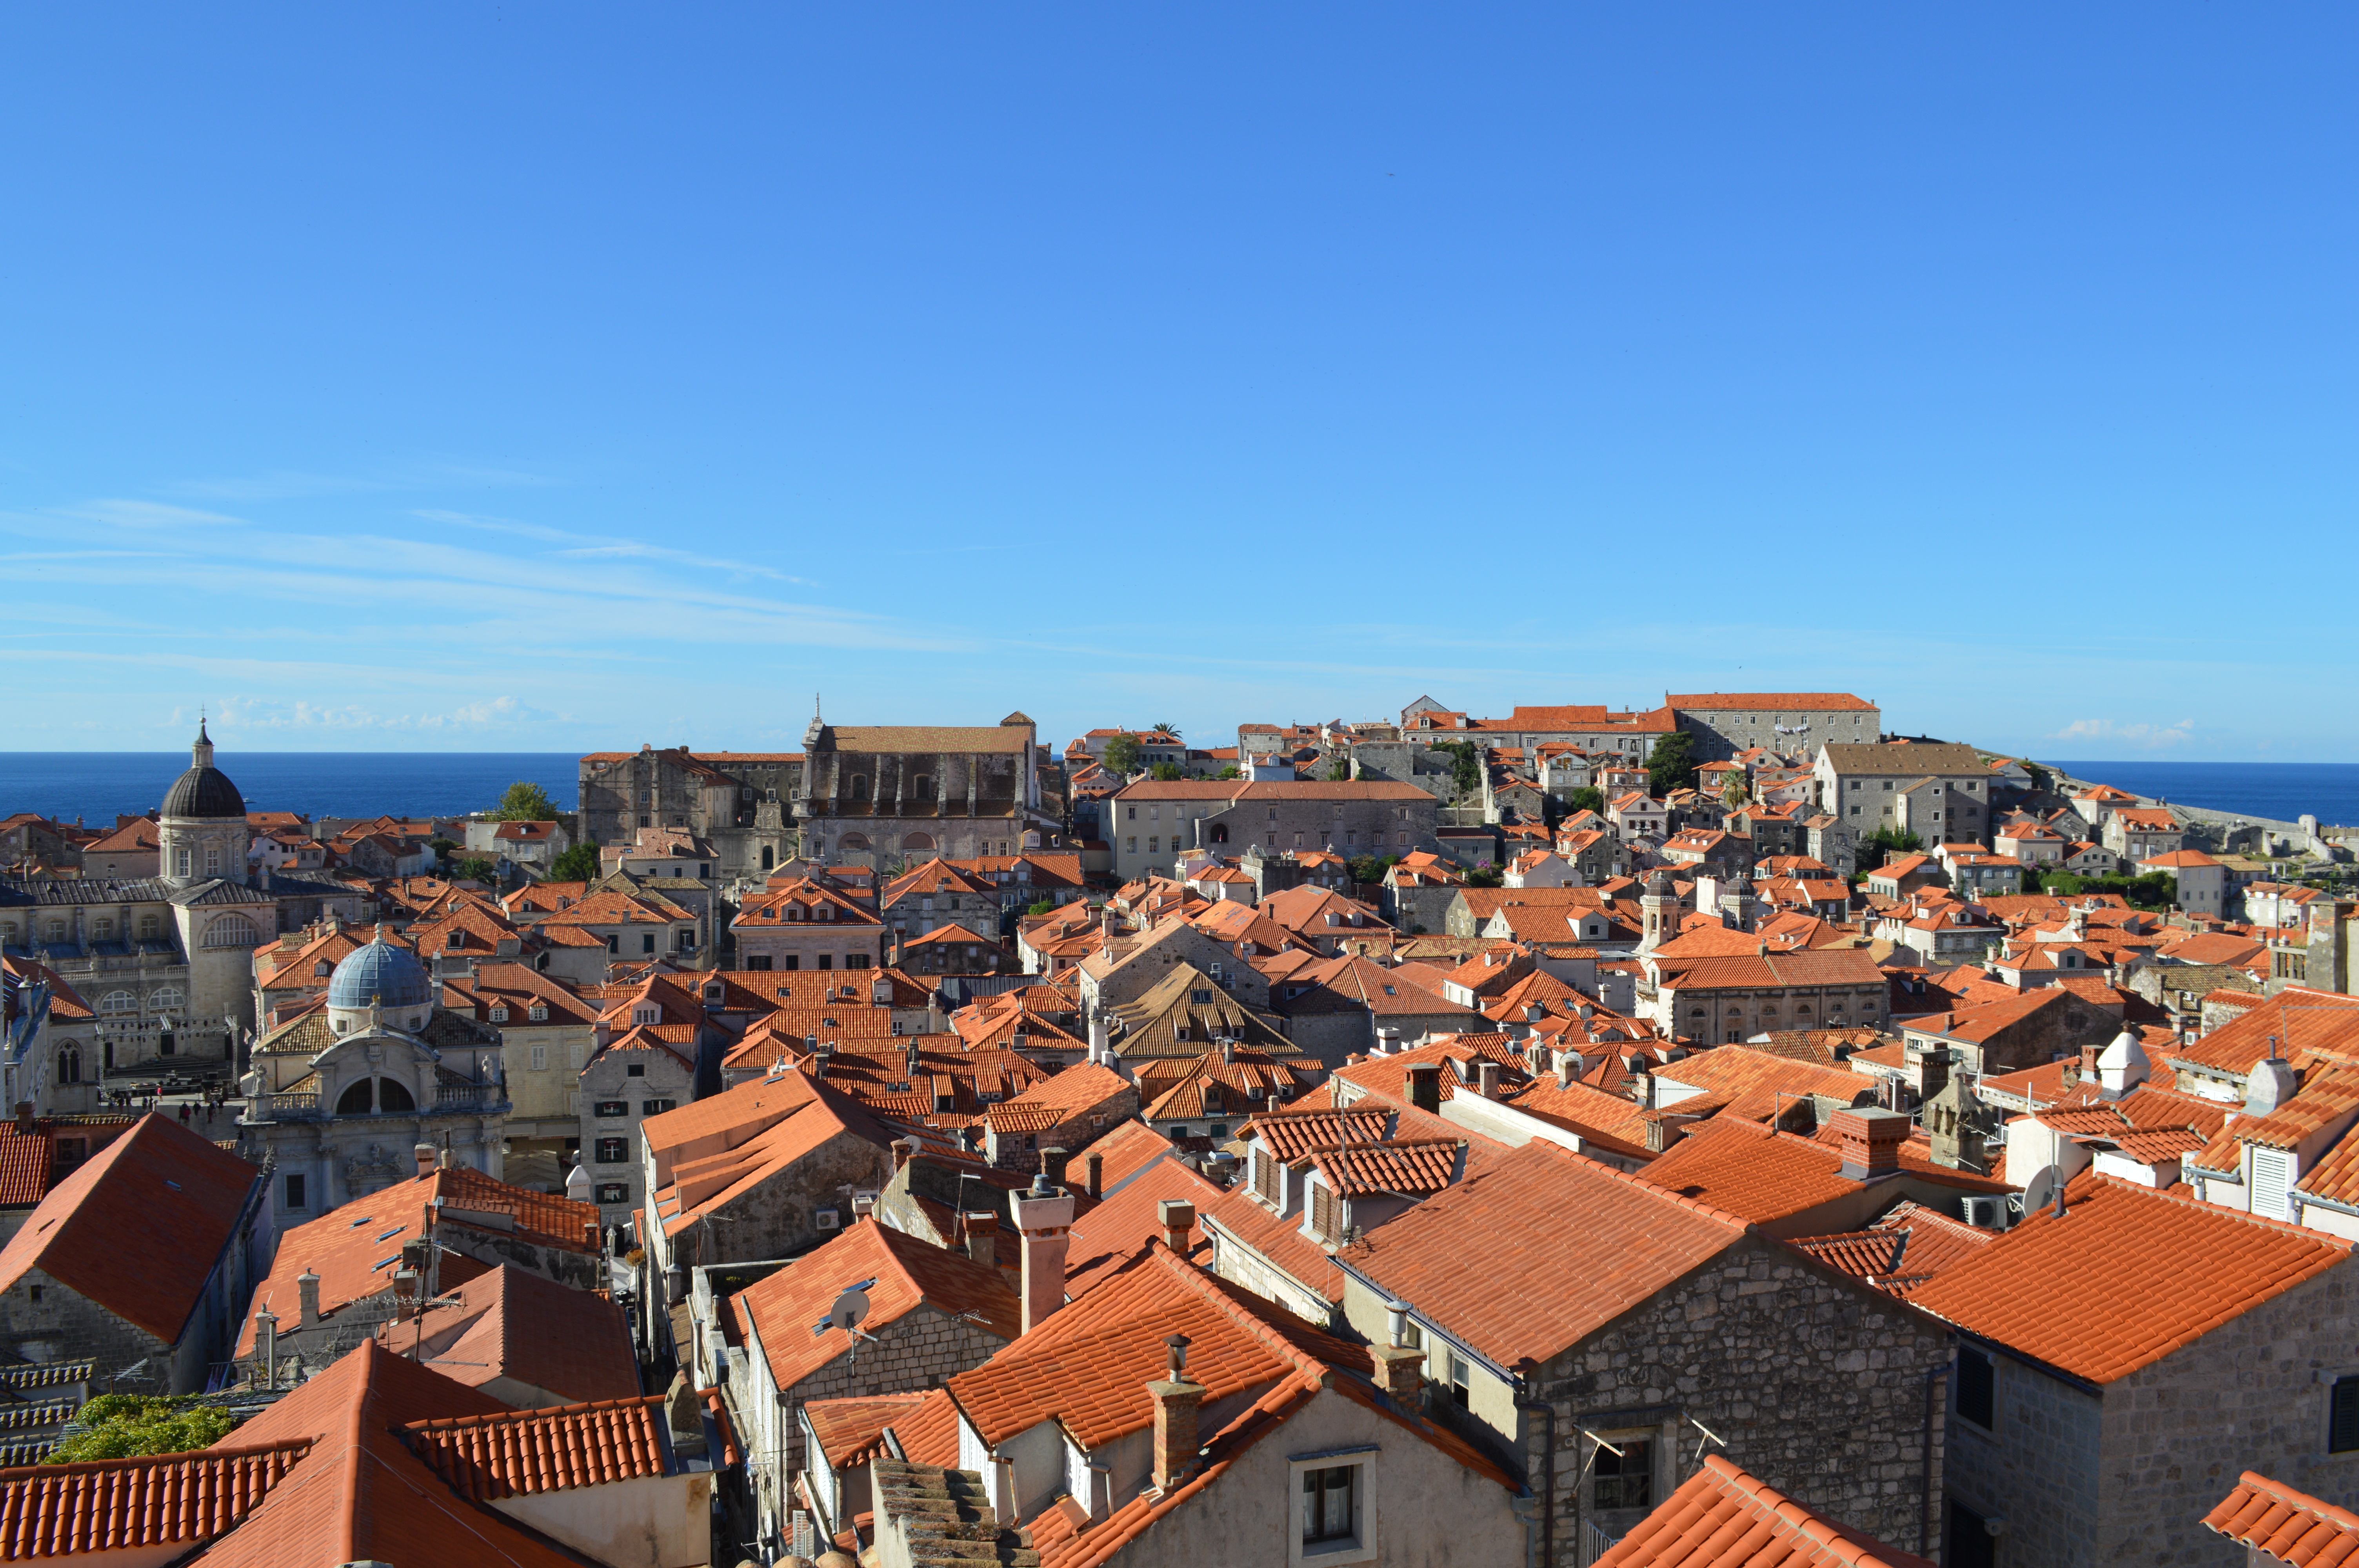 Dubrovnik rooftops, Croatia - cultivatedrambler.com